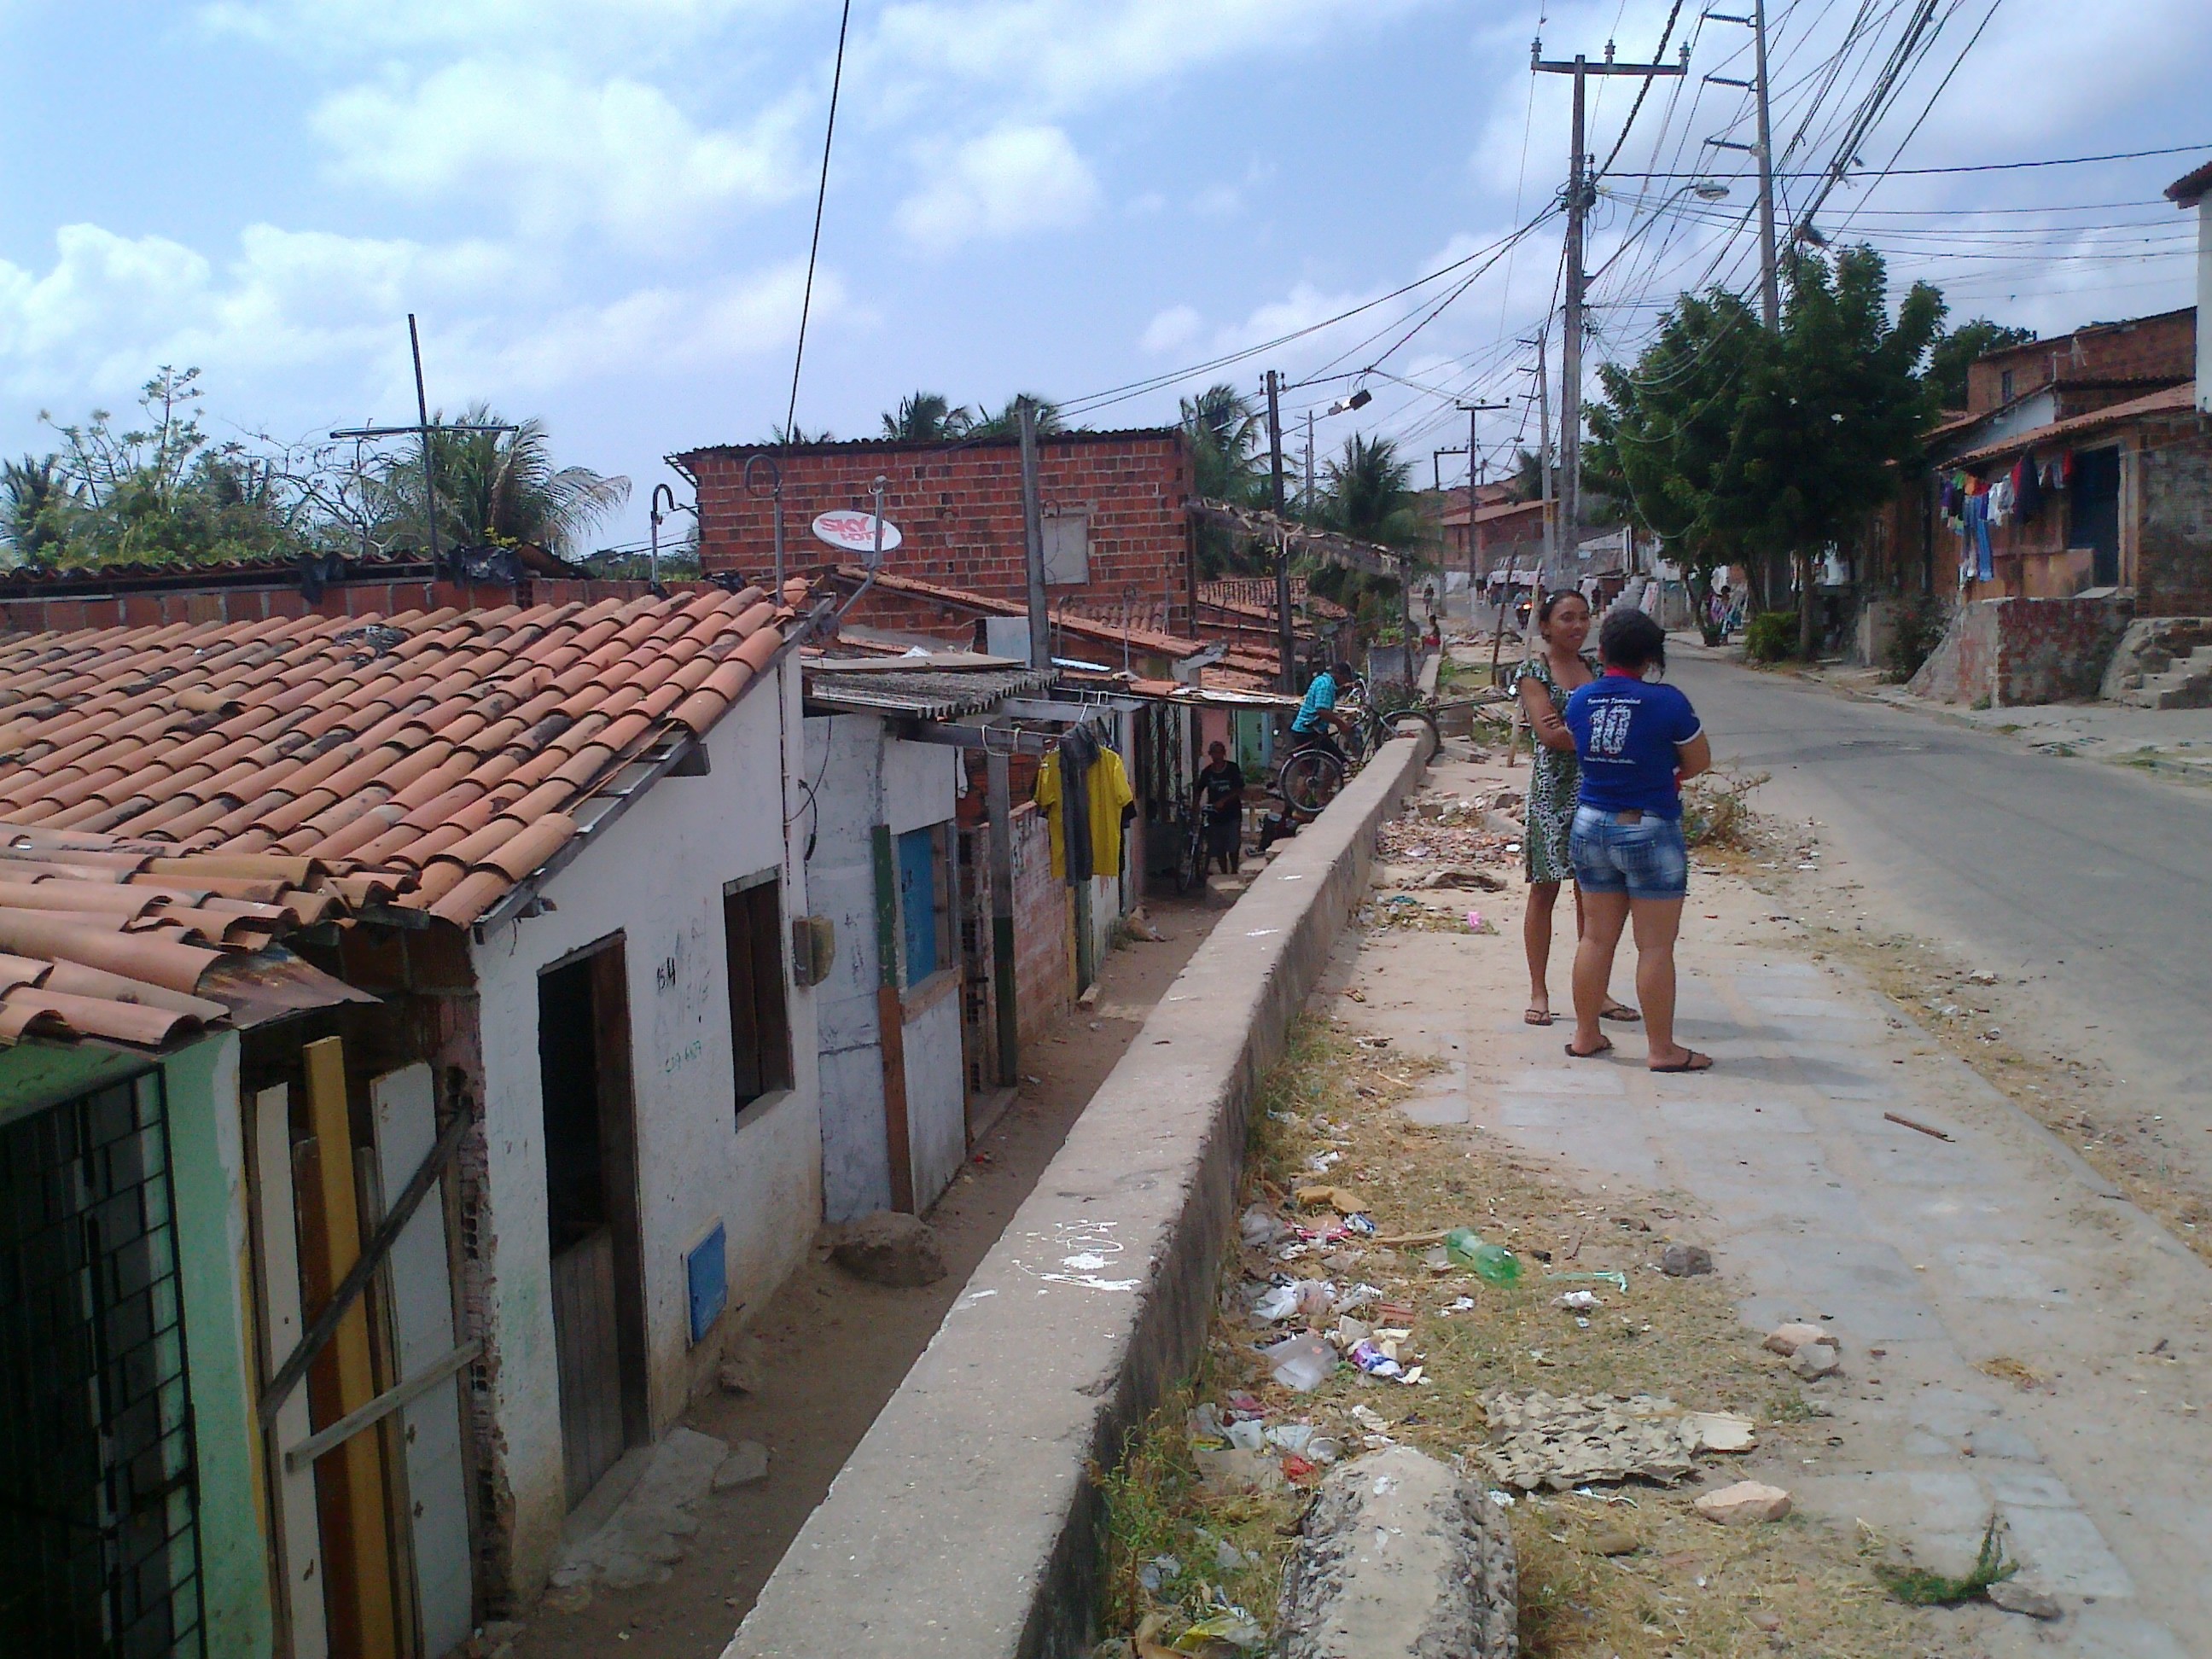 Auf dem Bild ist ein Teil von einer Favela zu sehen